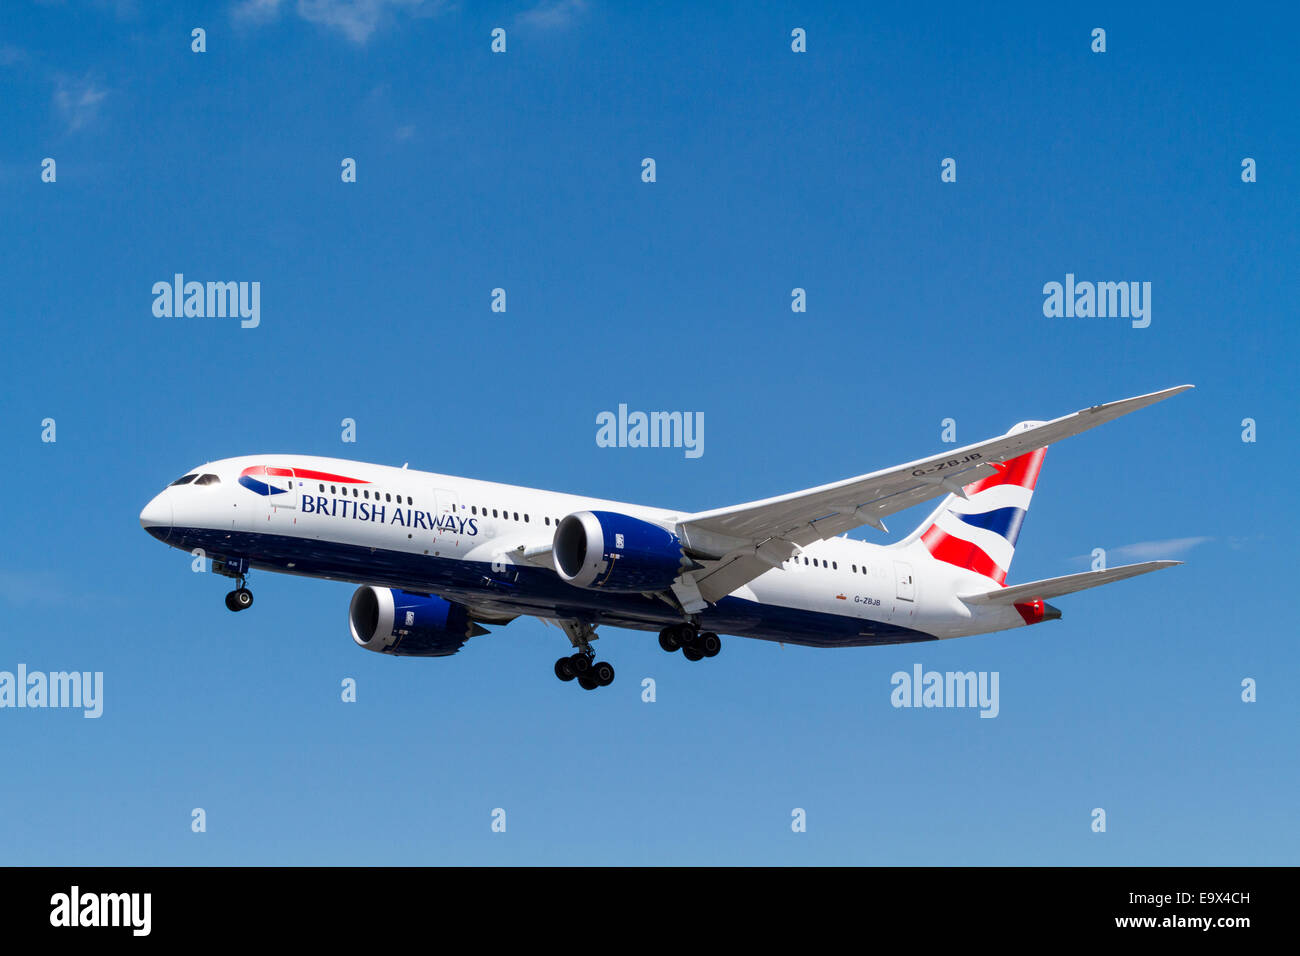 BA avion. British Airways Boeing 787 avion, G-ZBJB, sur l'approche à l'atterrissage à l'aéroport de Londres Heathrow, Angleterre, RU Banque D'Images